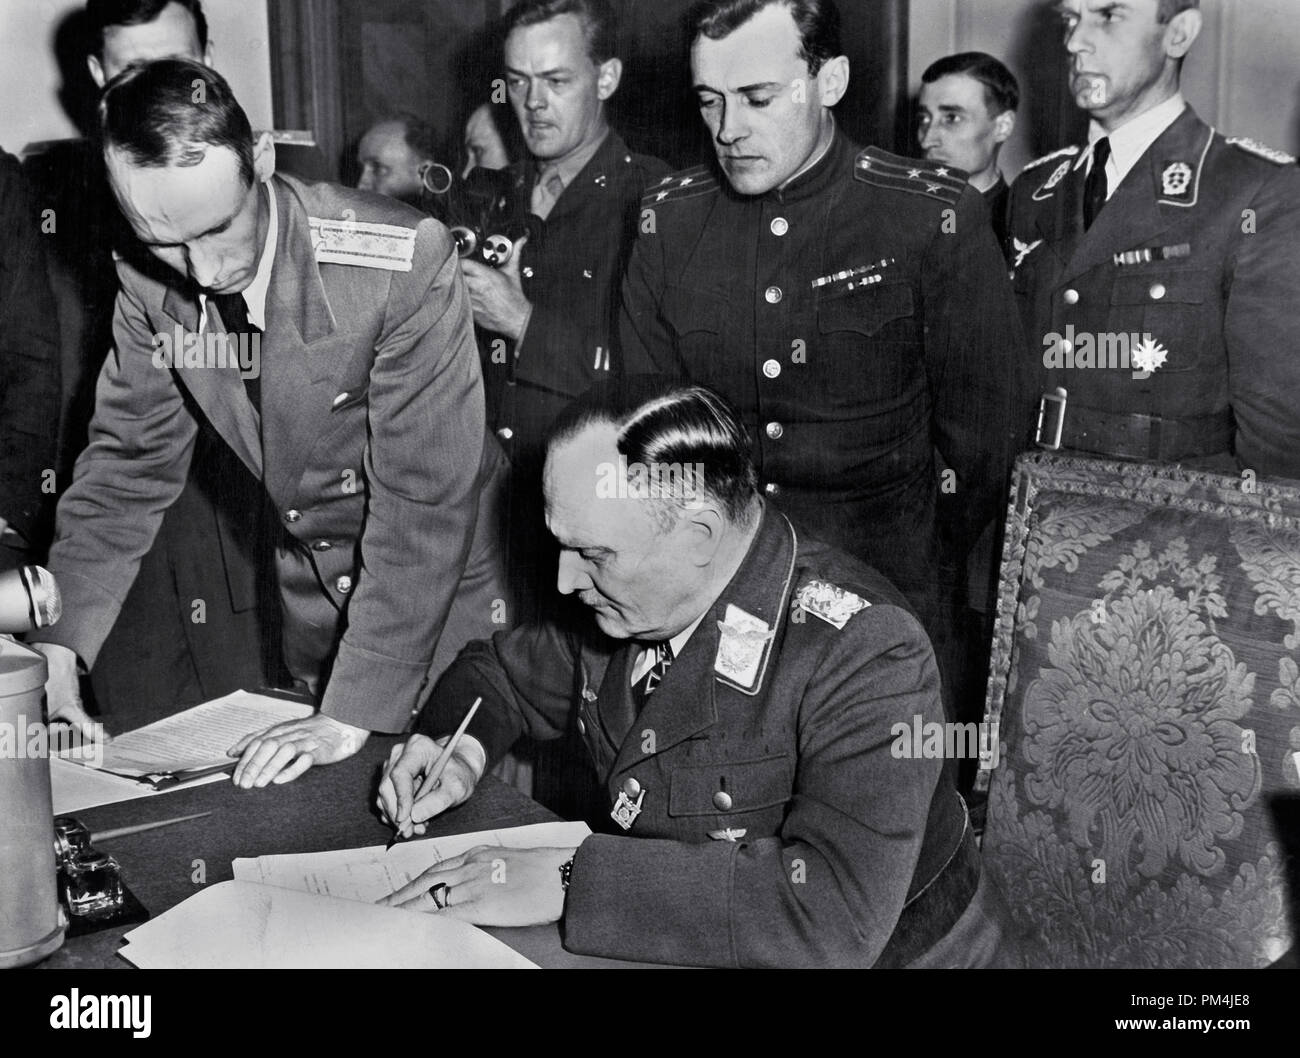 Le 7 mai 1945, le général allemand Alfred Jodl inconditionnellement remis toutes les forces allemandes pour les Alliés à Reims, au nord-ouest de la France n° de référence du fichier 1003 688THA Banque D'Images